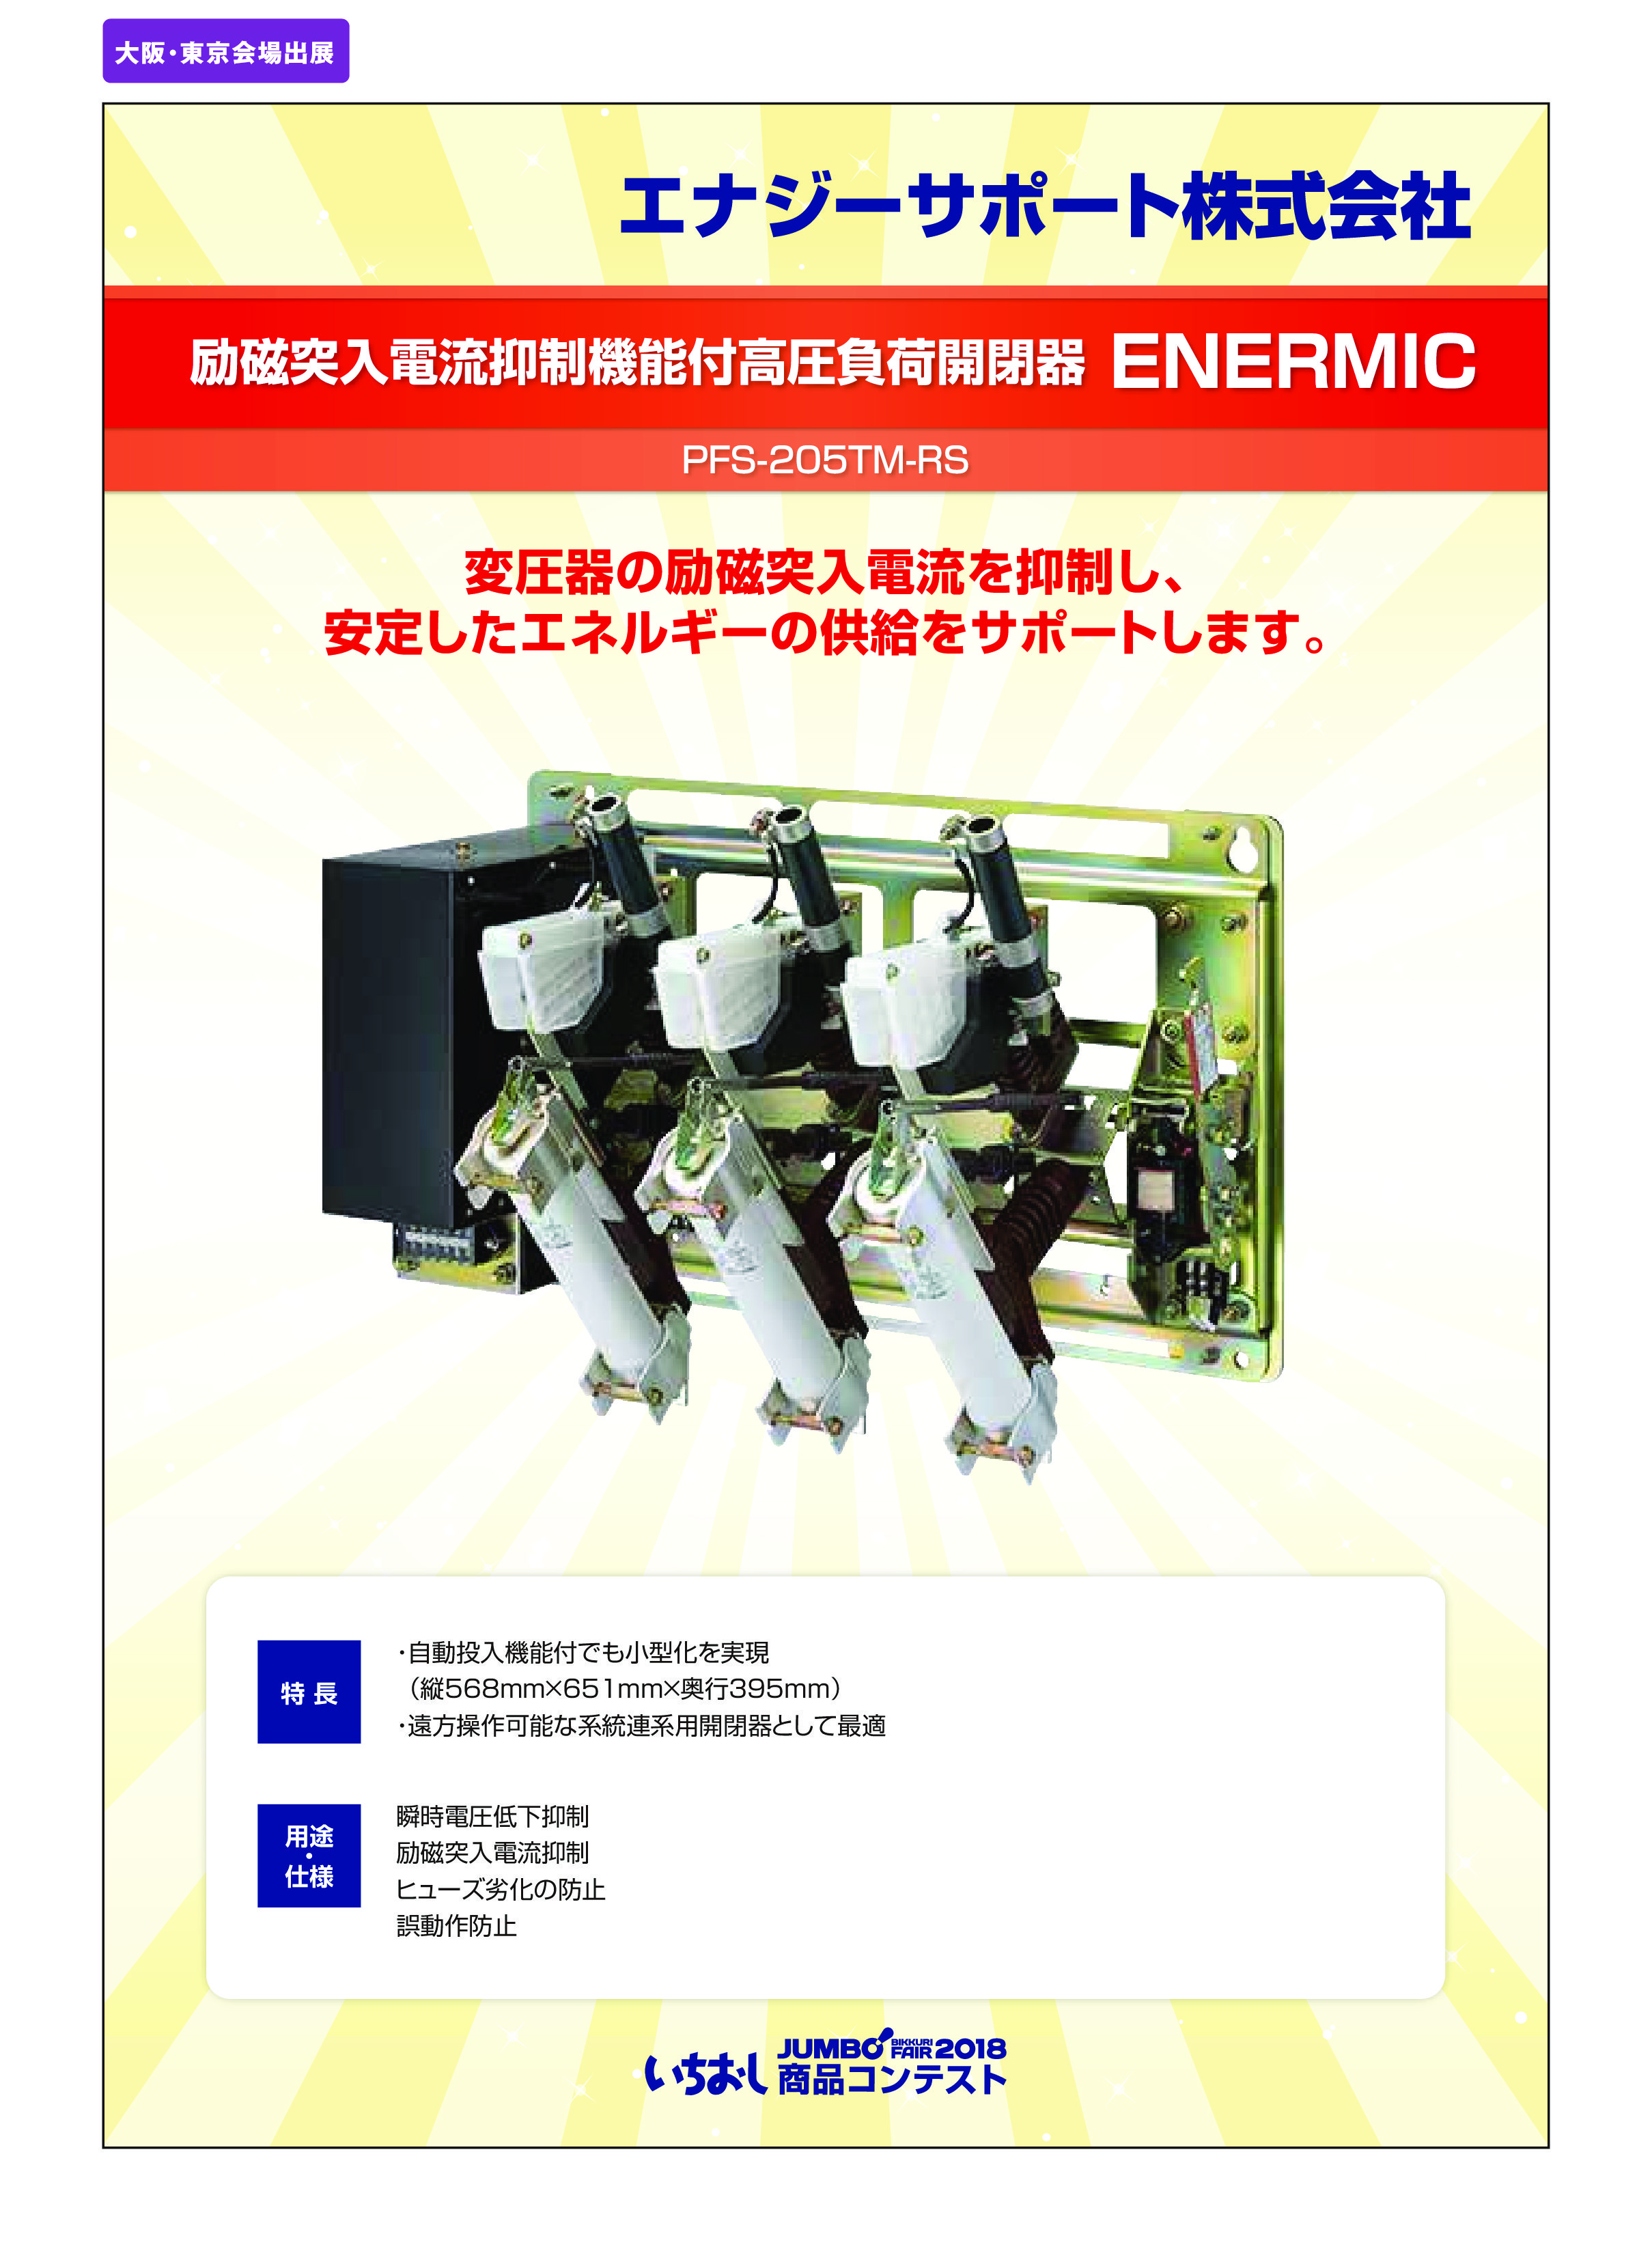 「励磁突入電流抑制機能付高圧負荷開閉器 ENERMIC」エナジーサポート株式会社の画像